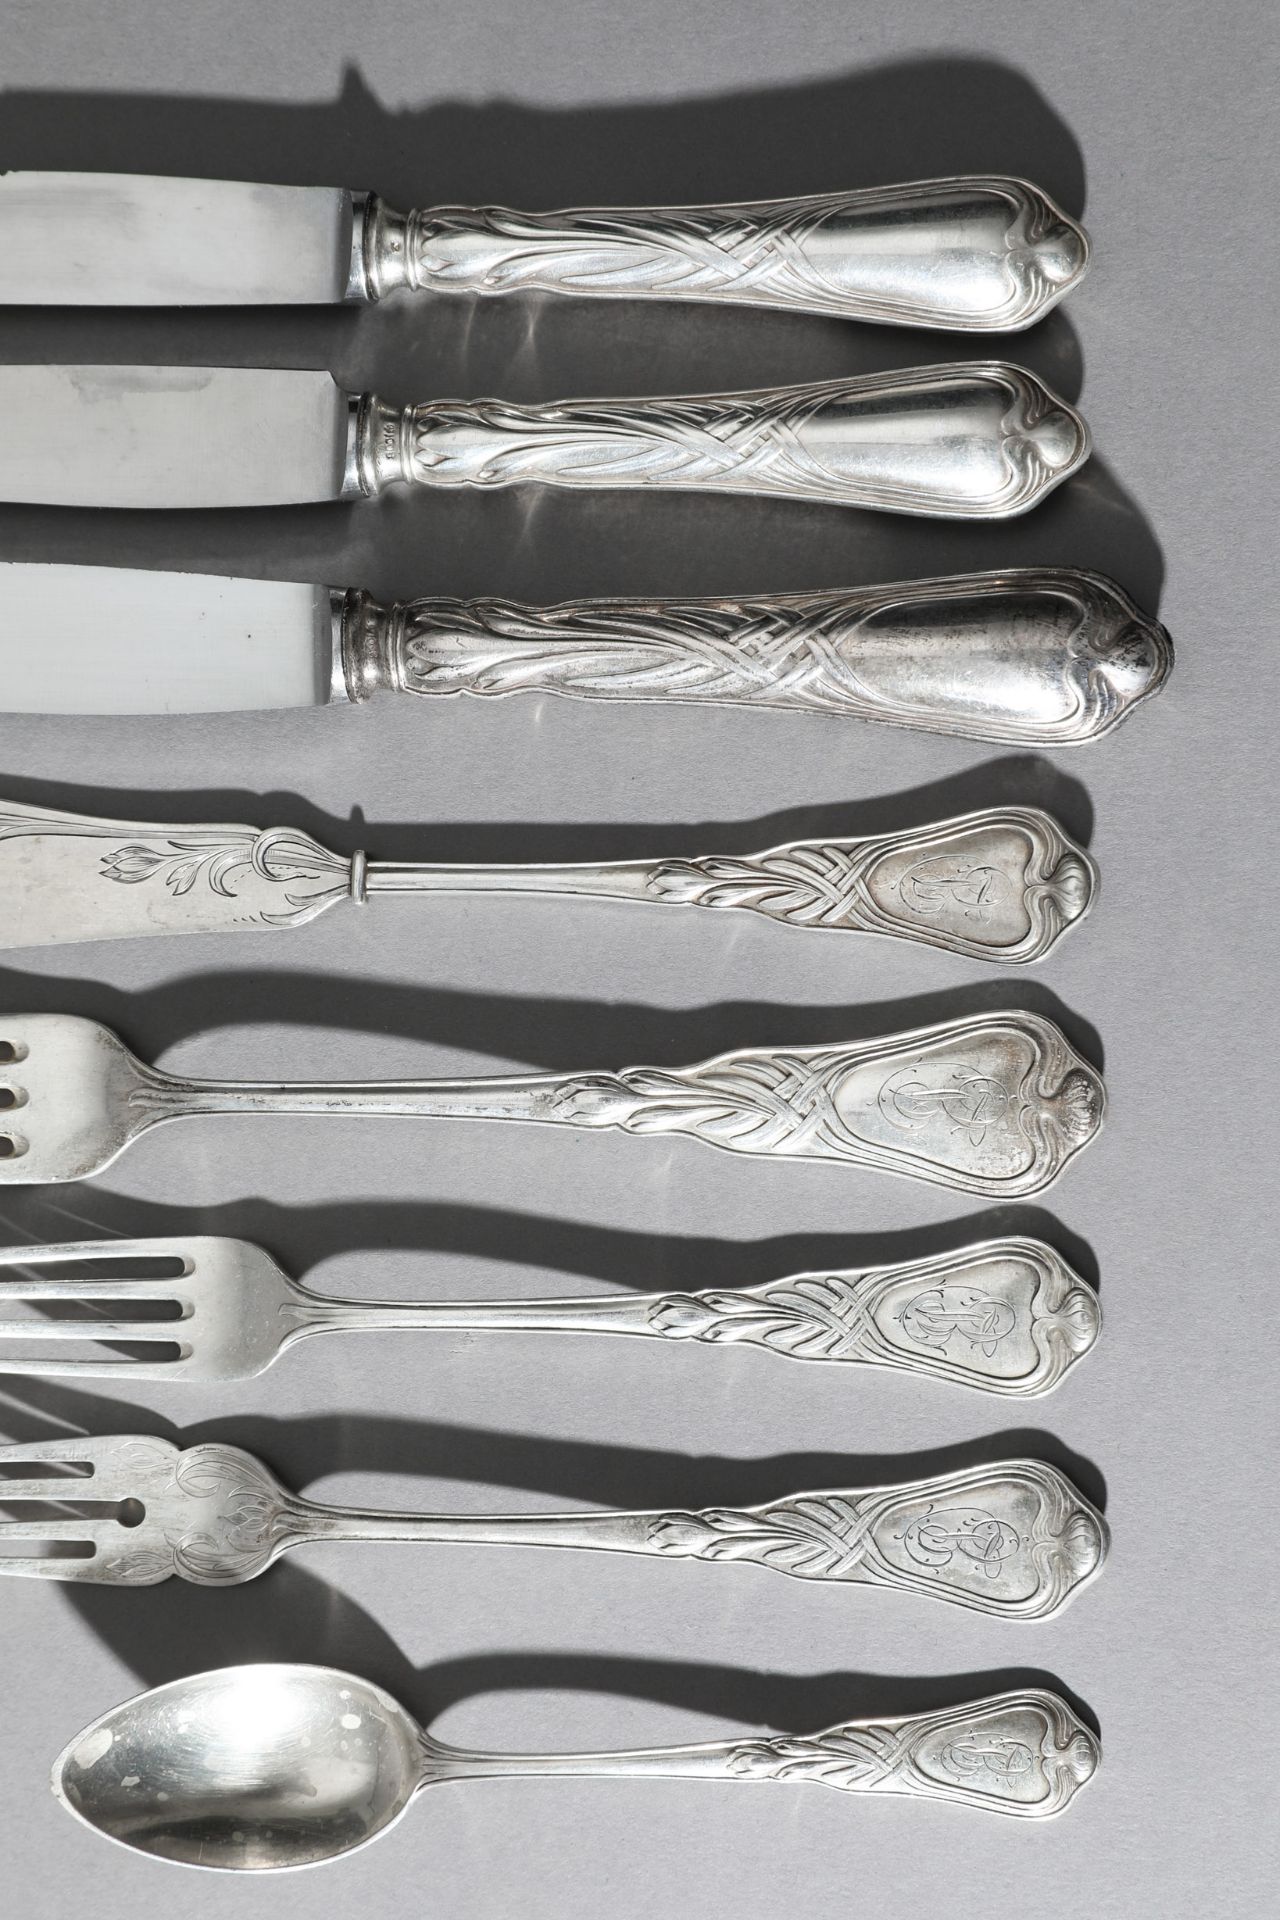 Heinrich Vogeler, Wilkens, Silver Fish Cutlery and Cutlery Herbstzeitlose, 48 pieces - Image 4 of 7